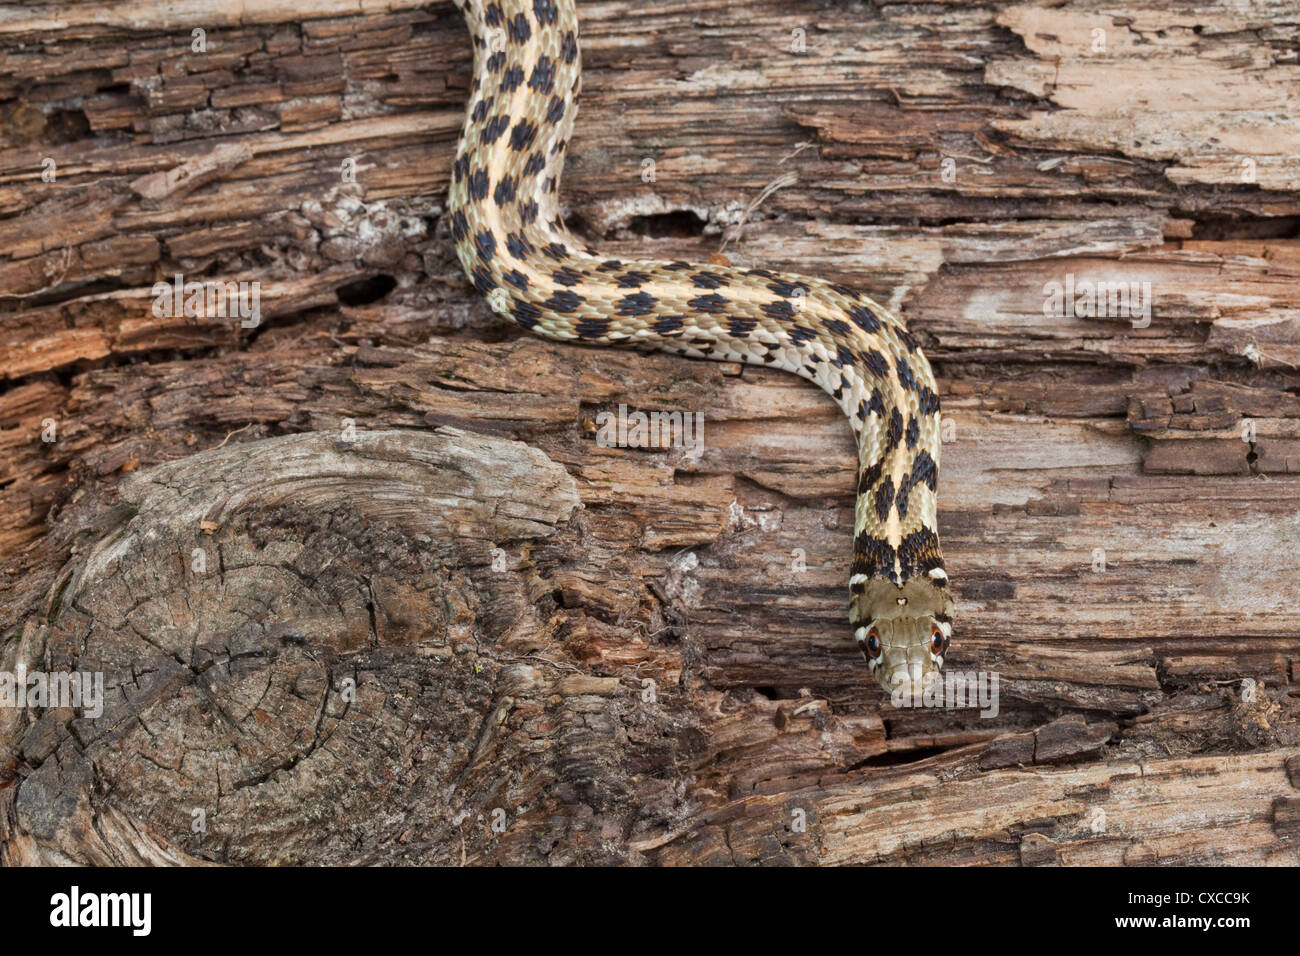 Giarrettiera a scacchi Snake (Thamnophis marcianus). Pianura del SW negli Stati Uniti d'America. Foto Stock